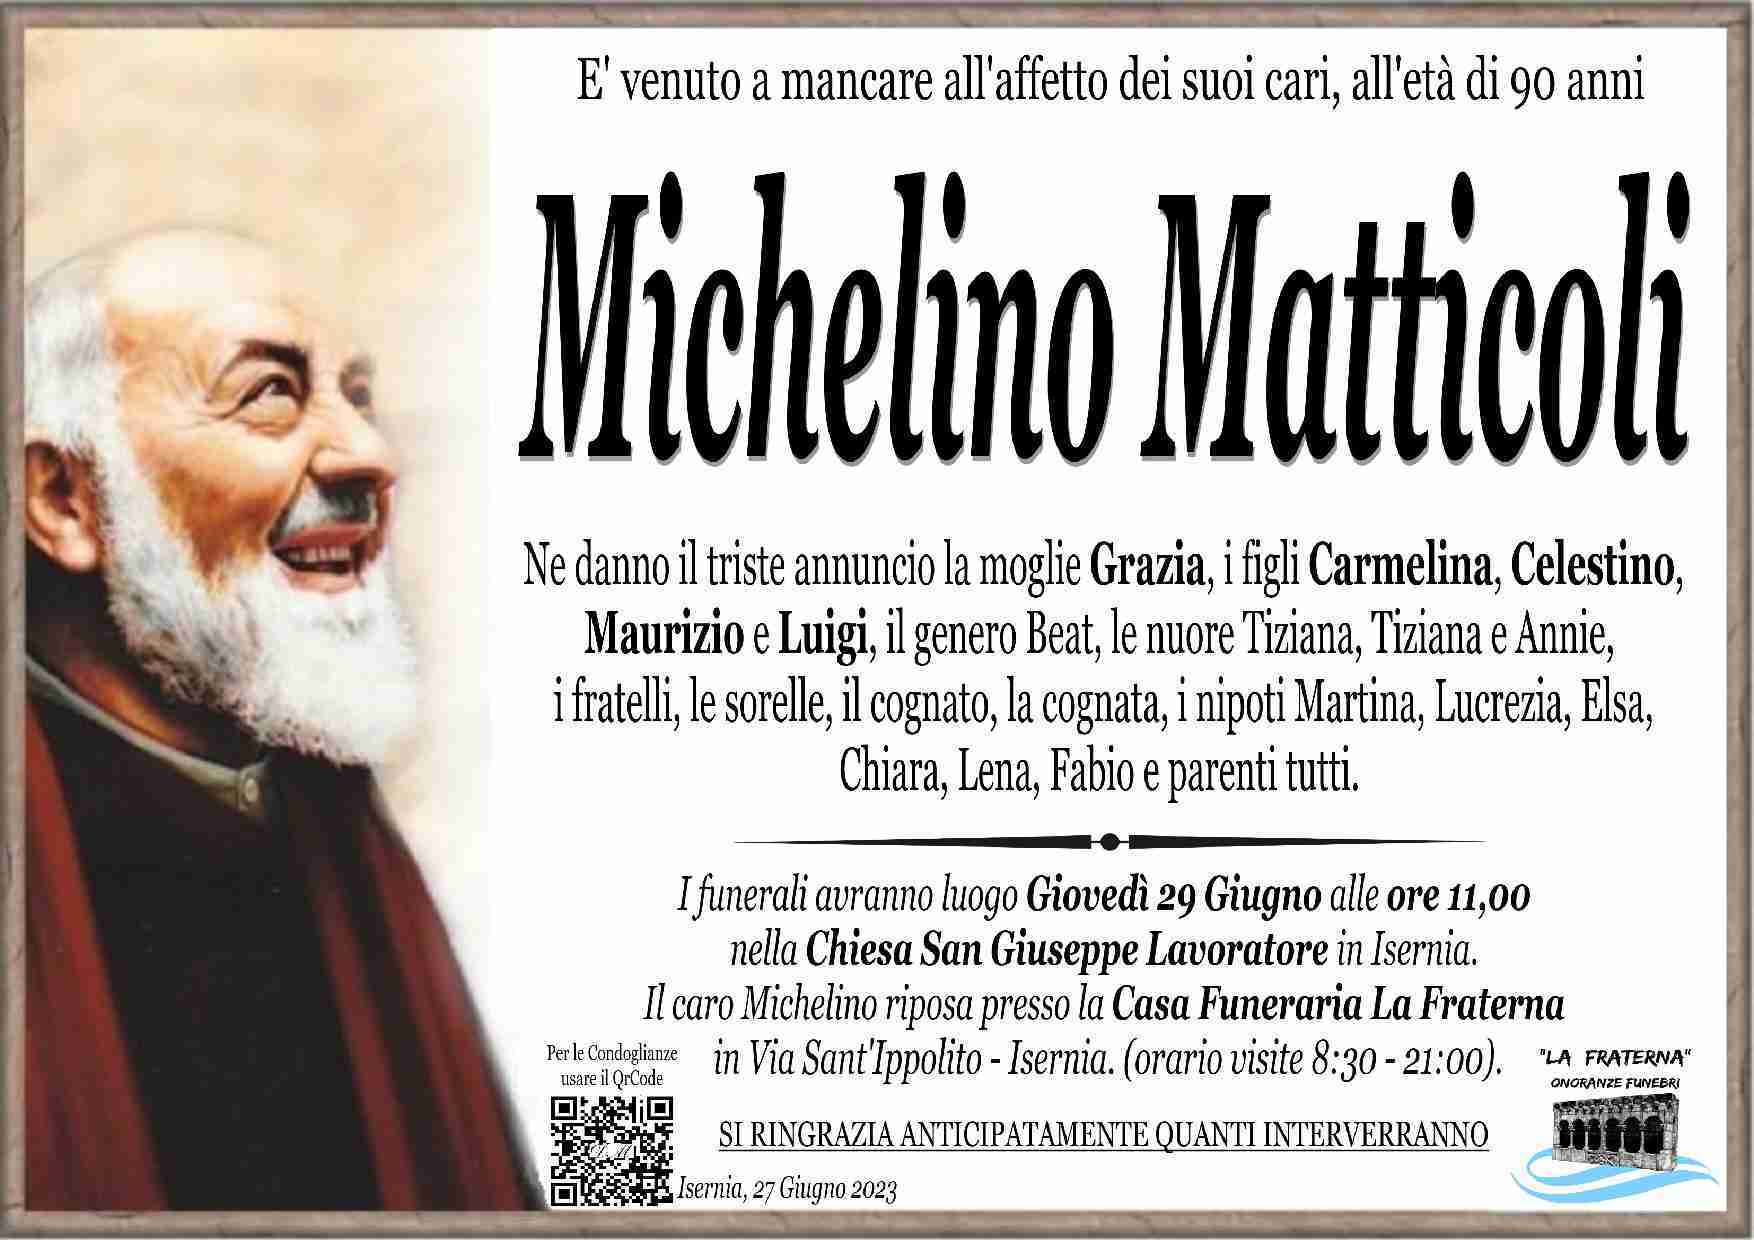 Michelino Matticoli